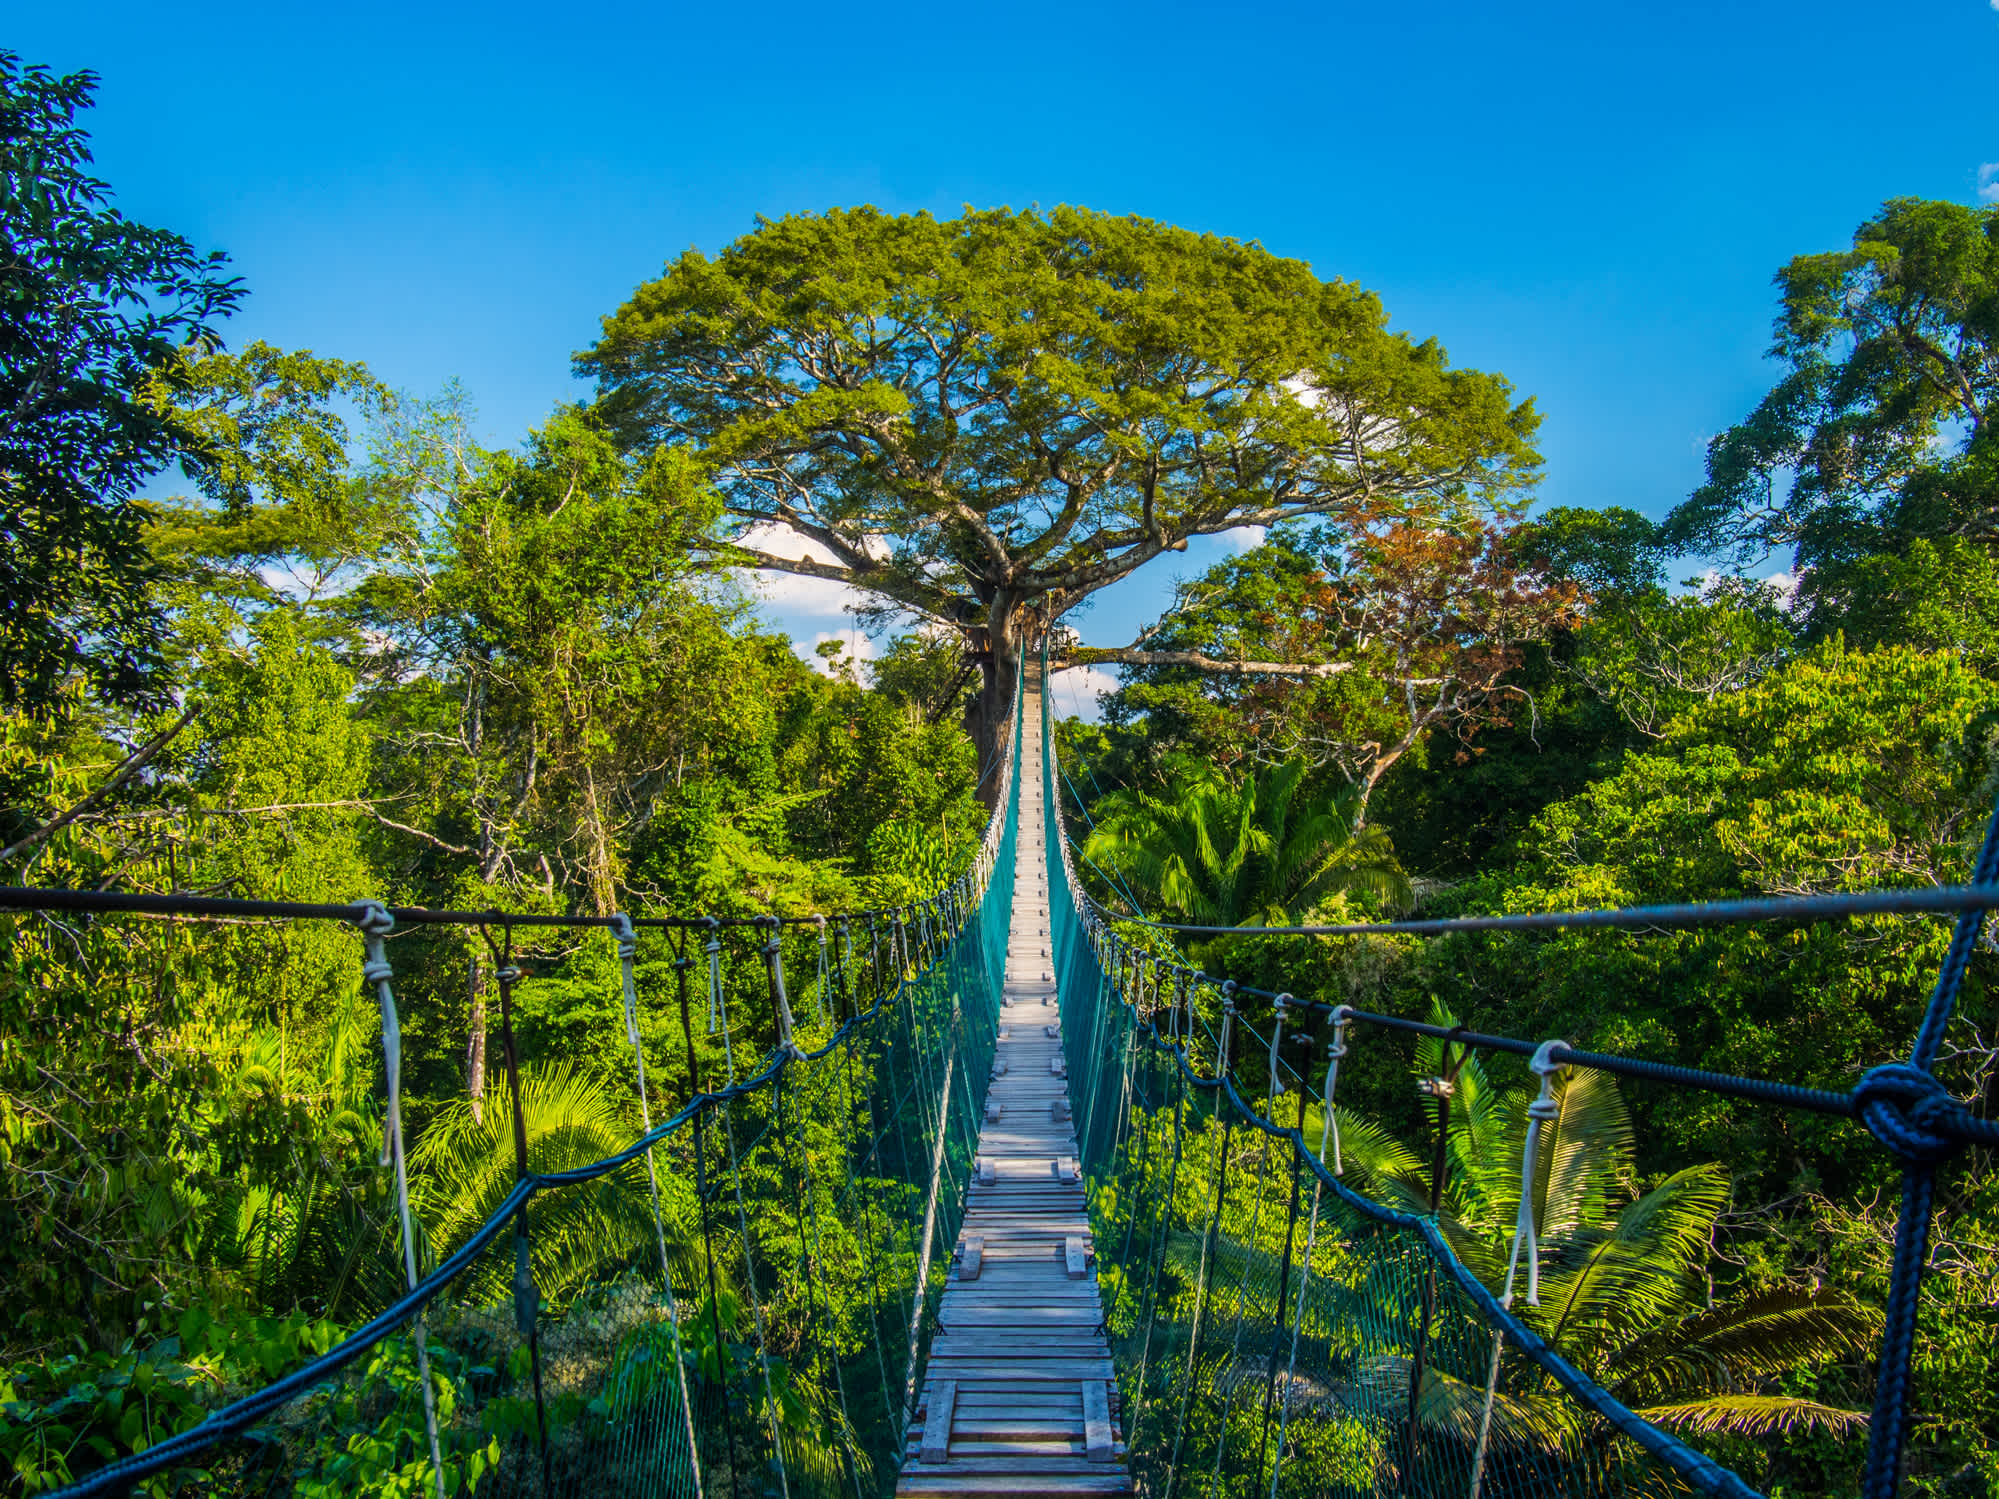 Eine lange Hängebrücke mit herrlichem Blick auf den Regenwald im peruanischen Amazonasgebiet, dem Naturreservat Tambopata.